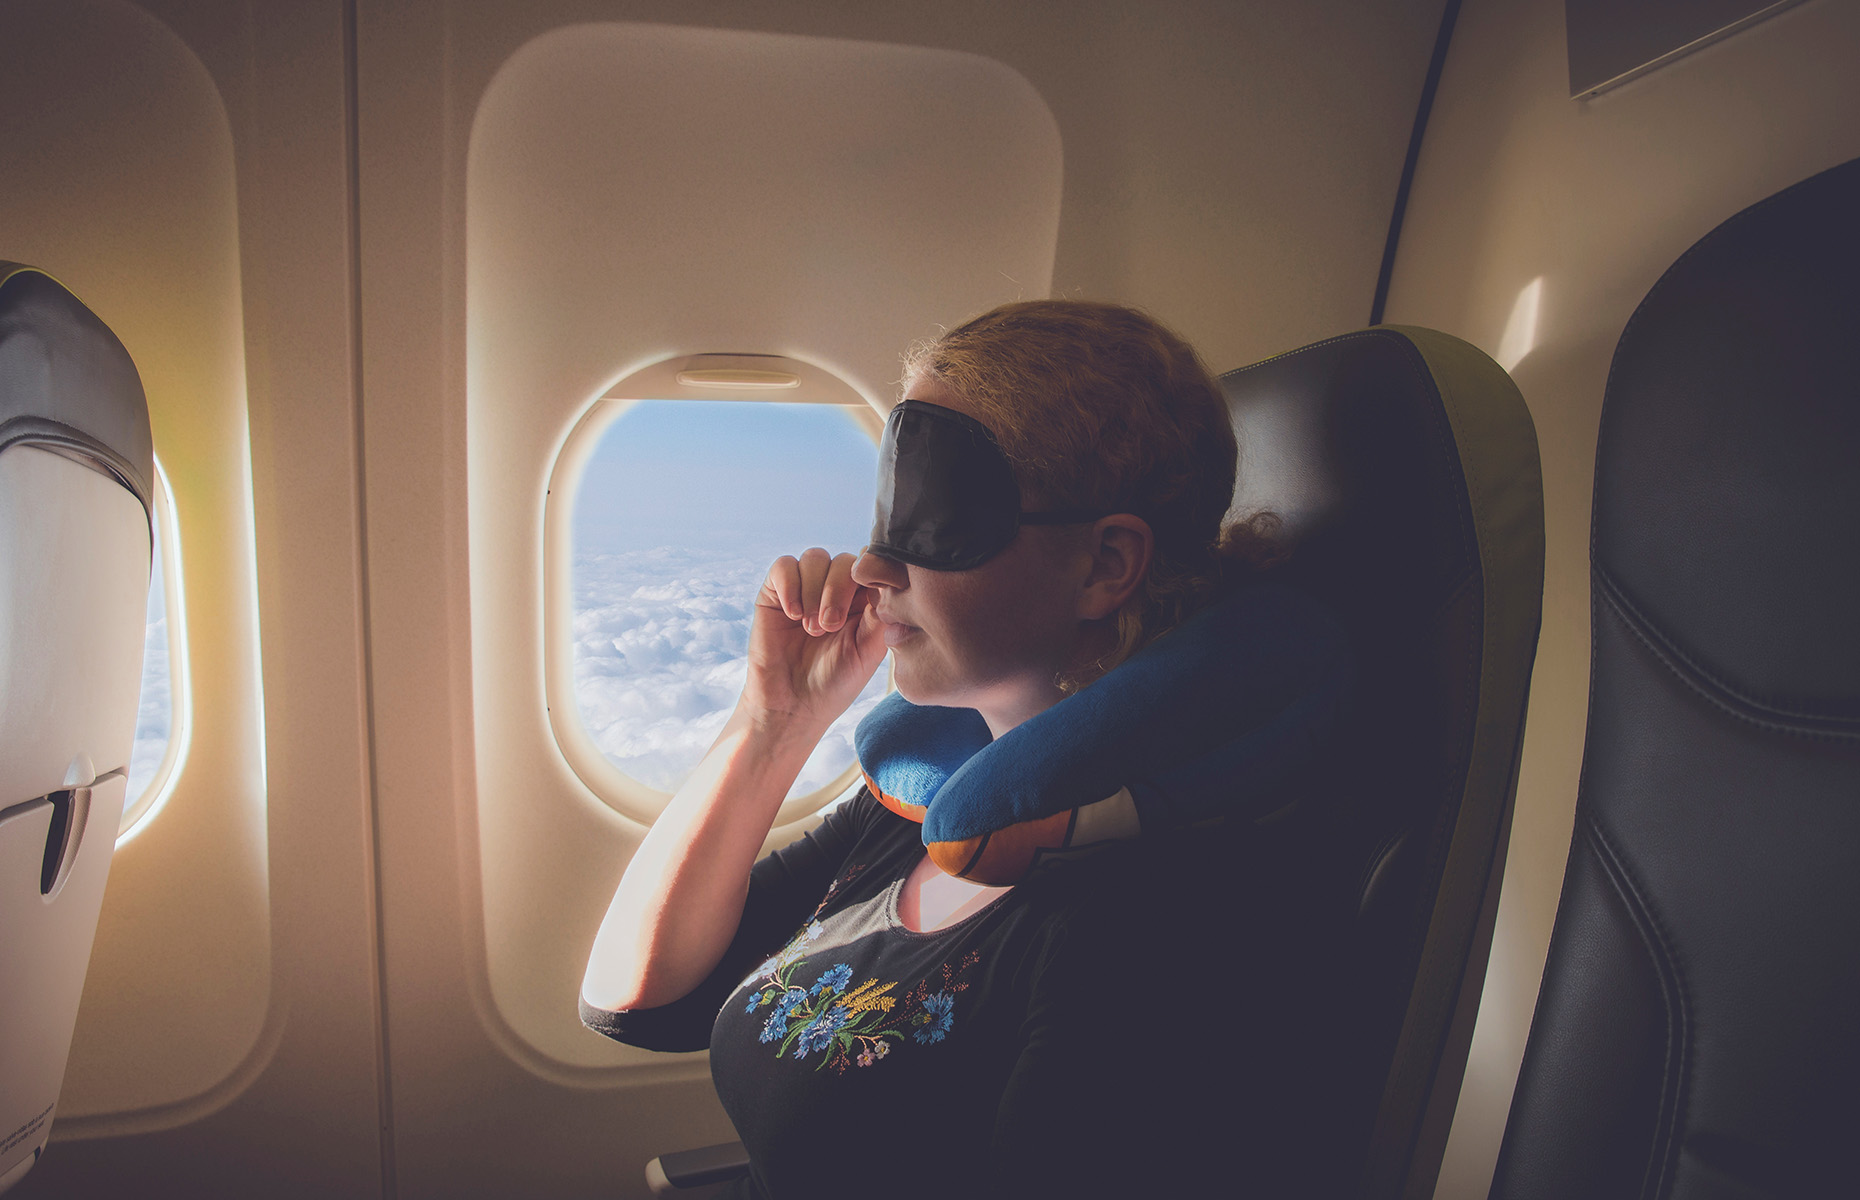 Sleeping on a plane (Image: FotoHelin/Shutterstock)